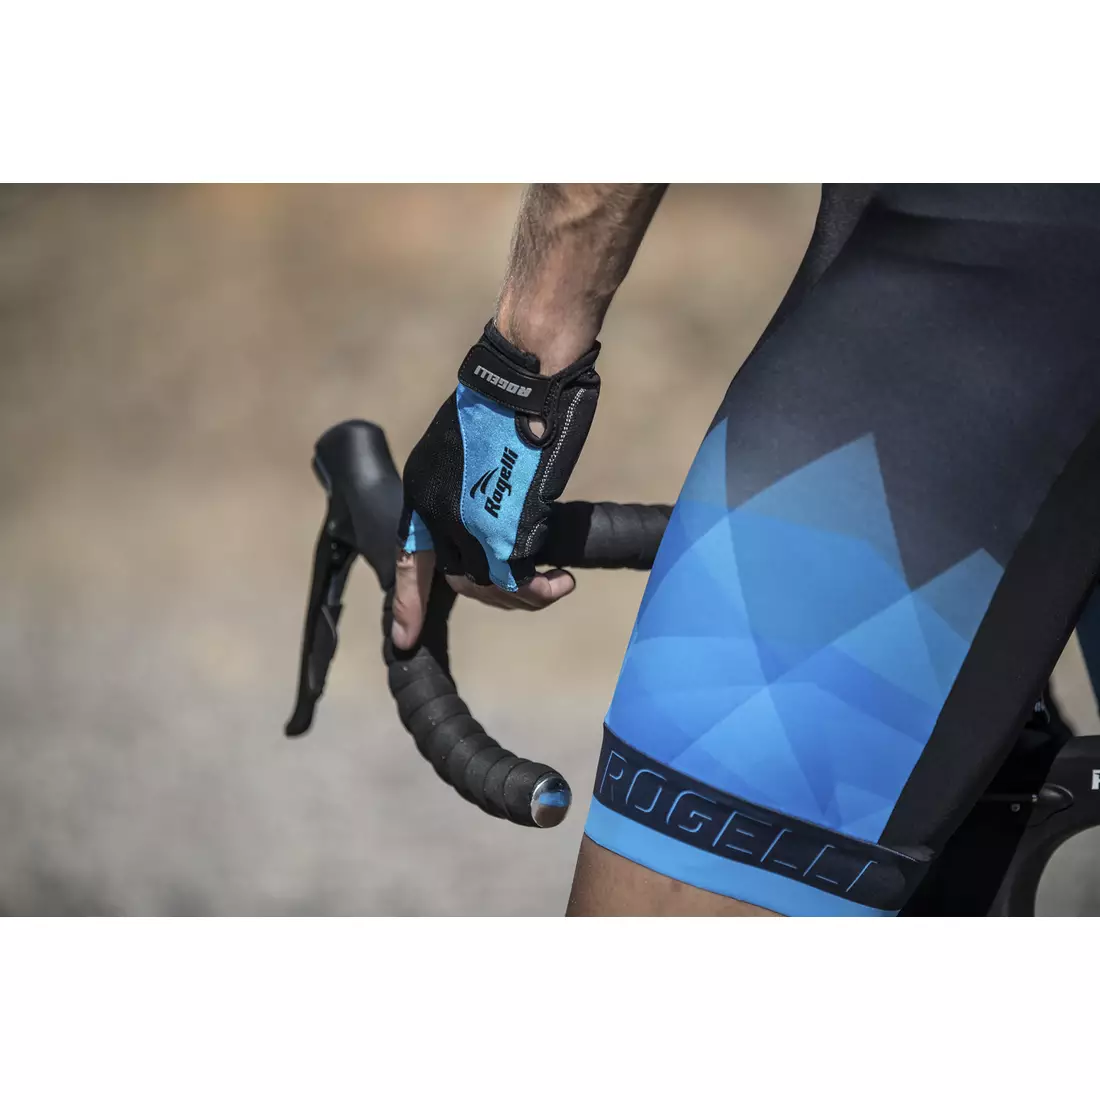 ROGELLI ISPIRATO 2.0 férfi fekete és kék kerékpáros nadrág